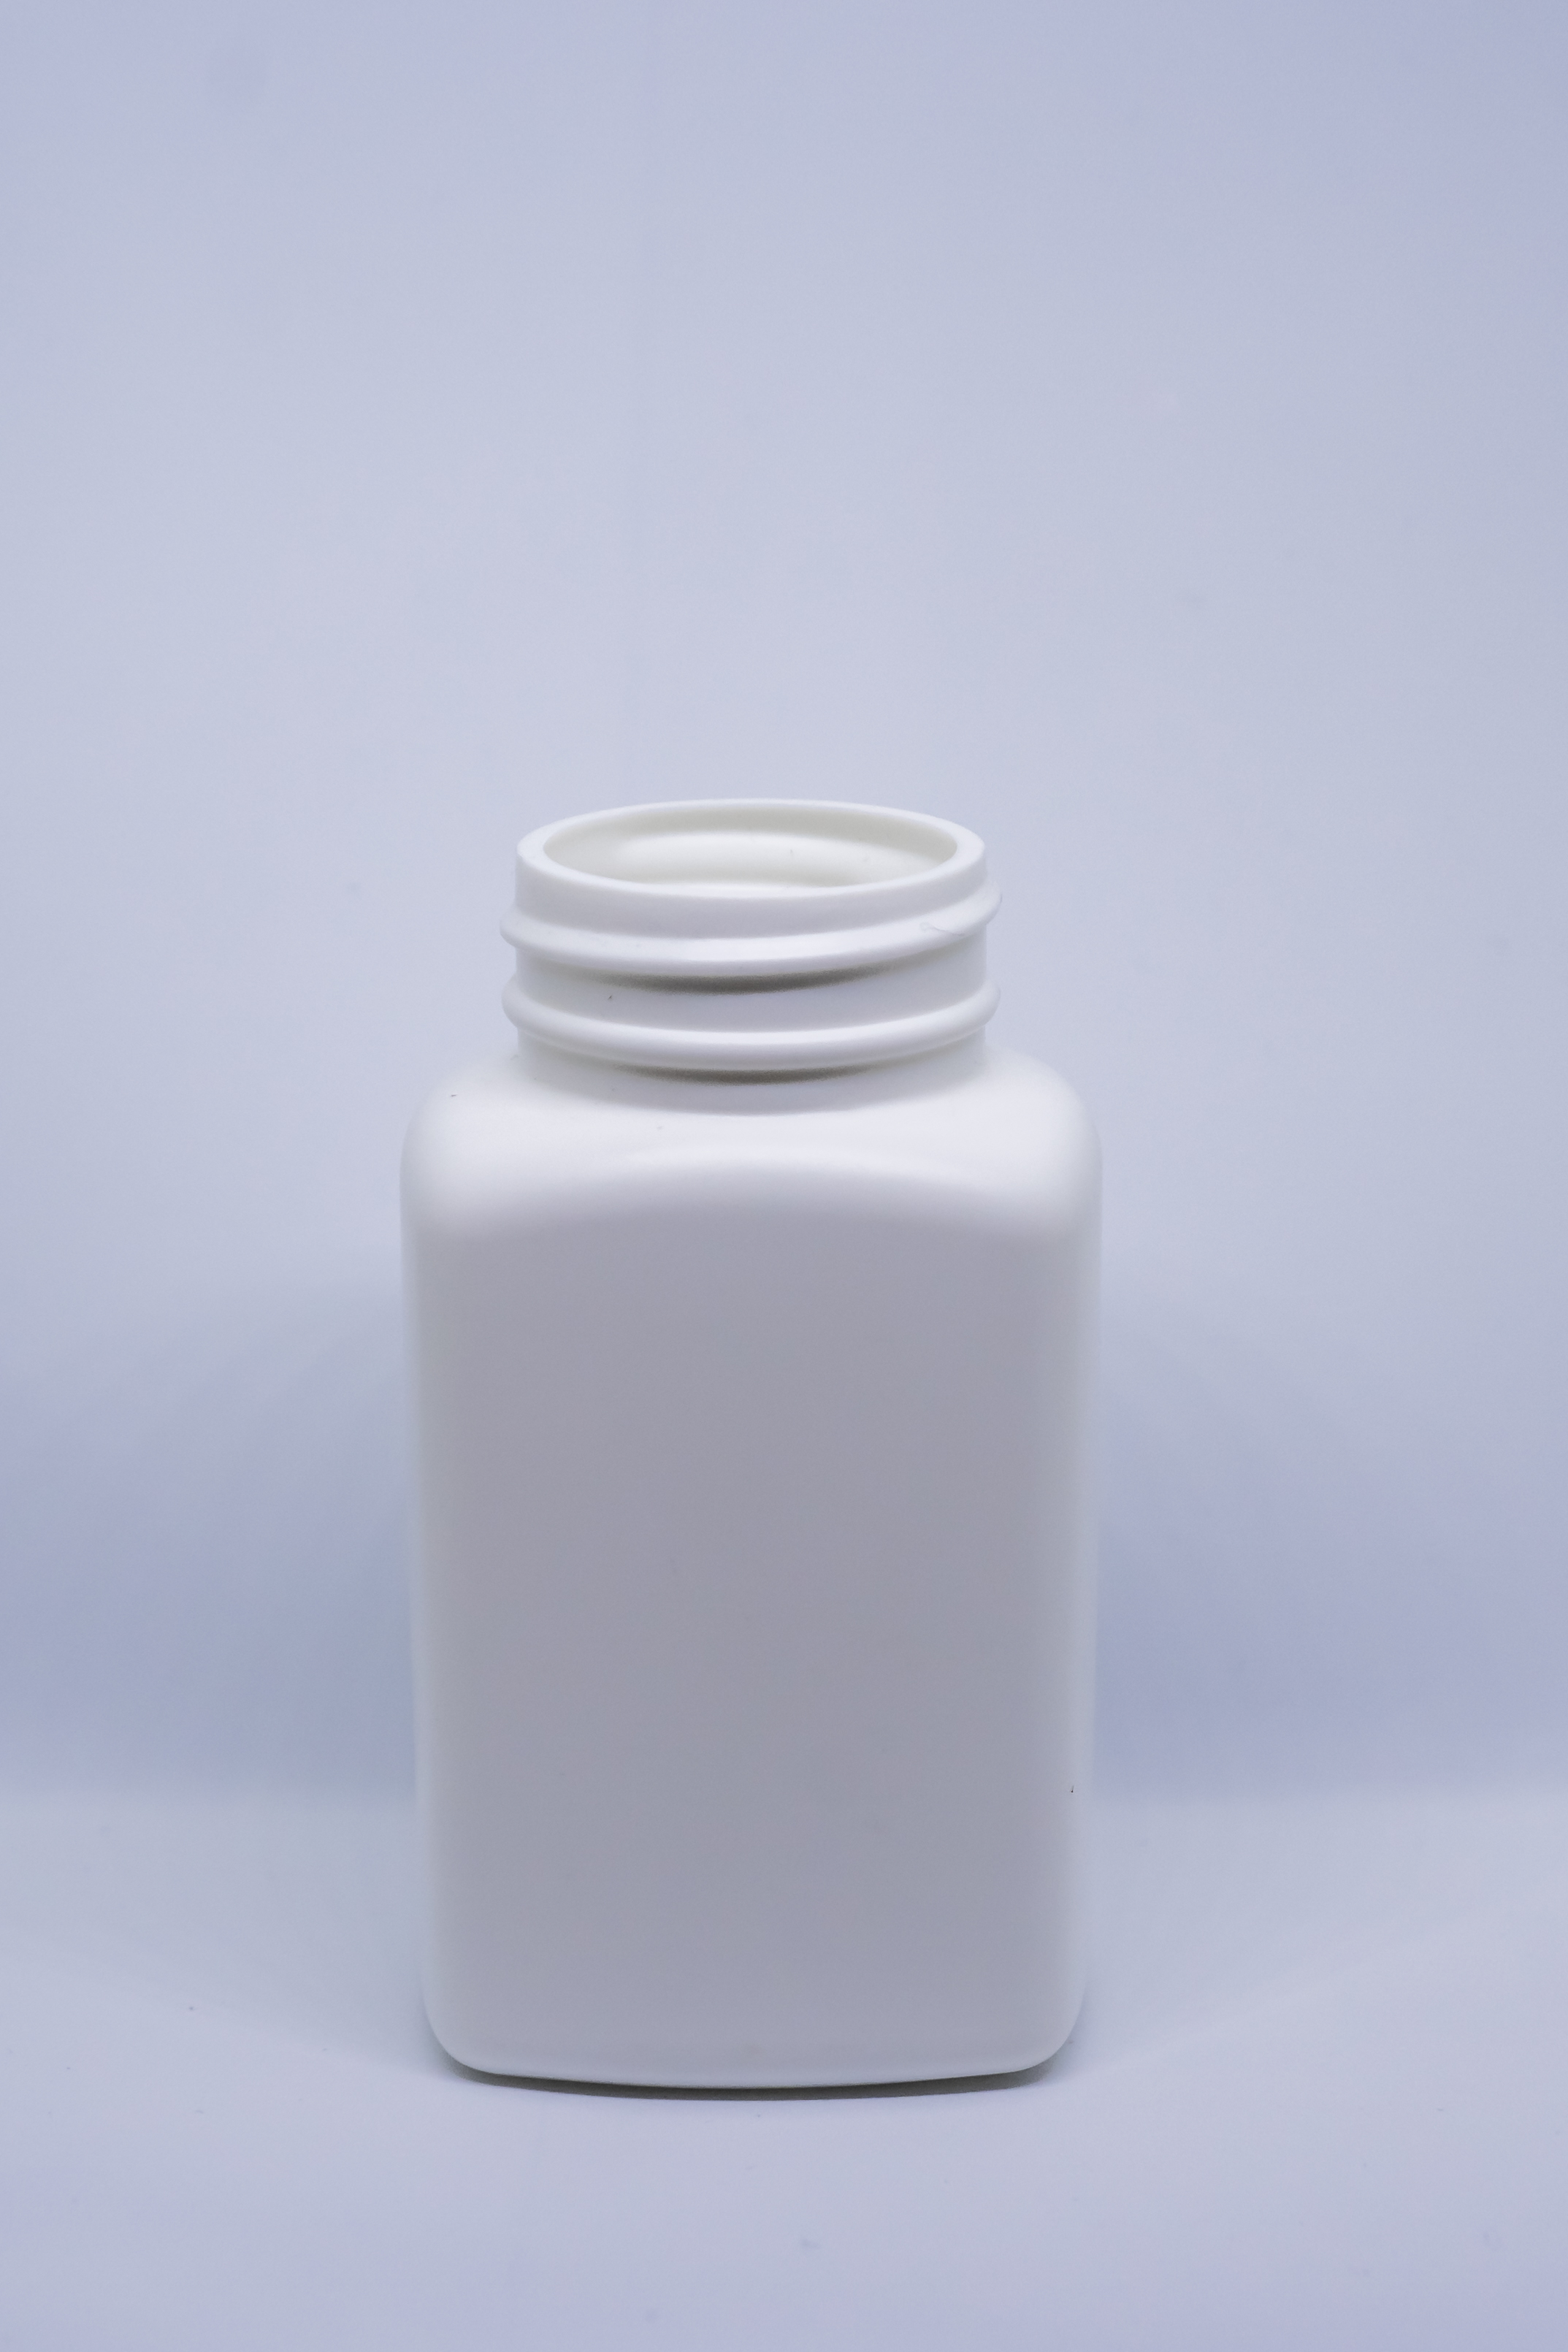 בקבוק מלבני 150 מ"ל HDPE פייה 38 לבן